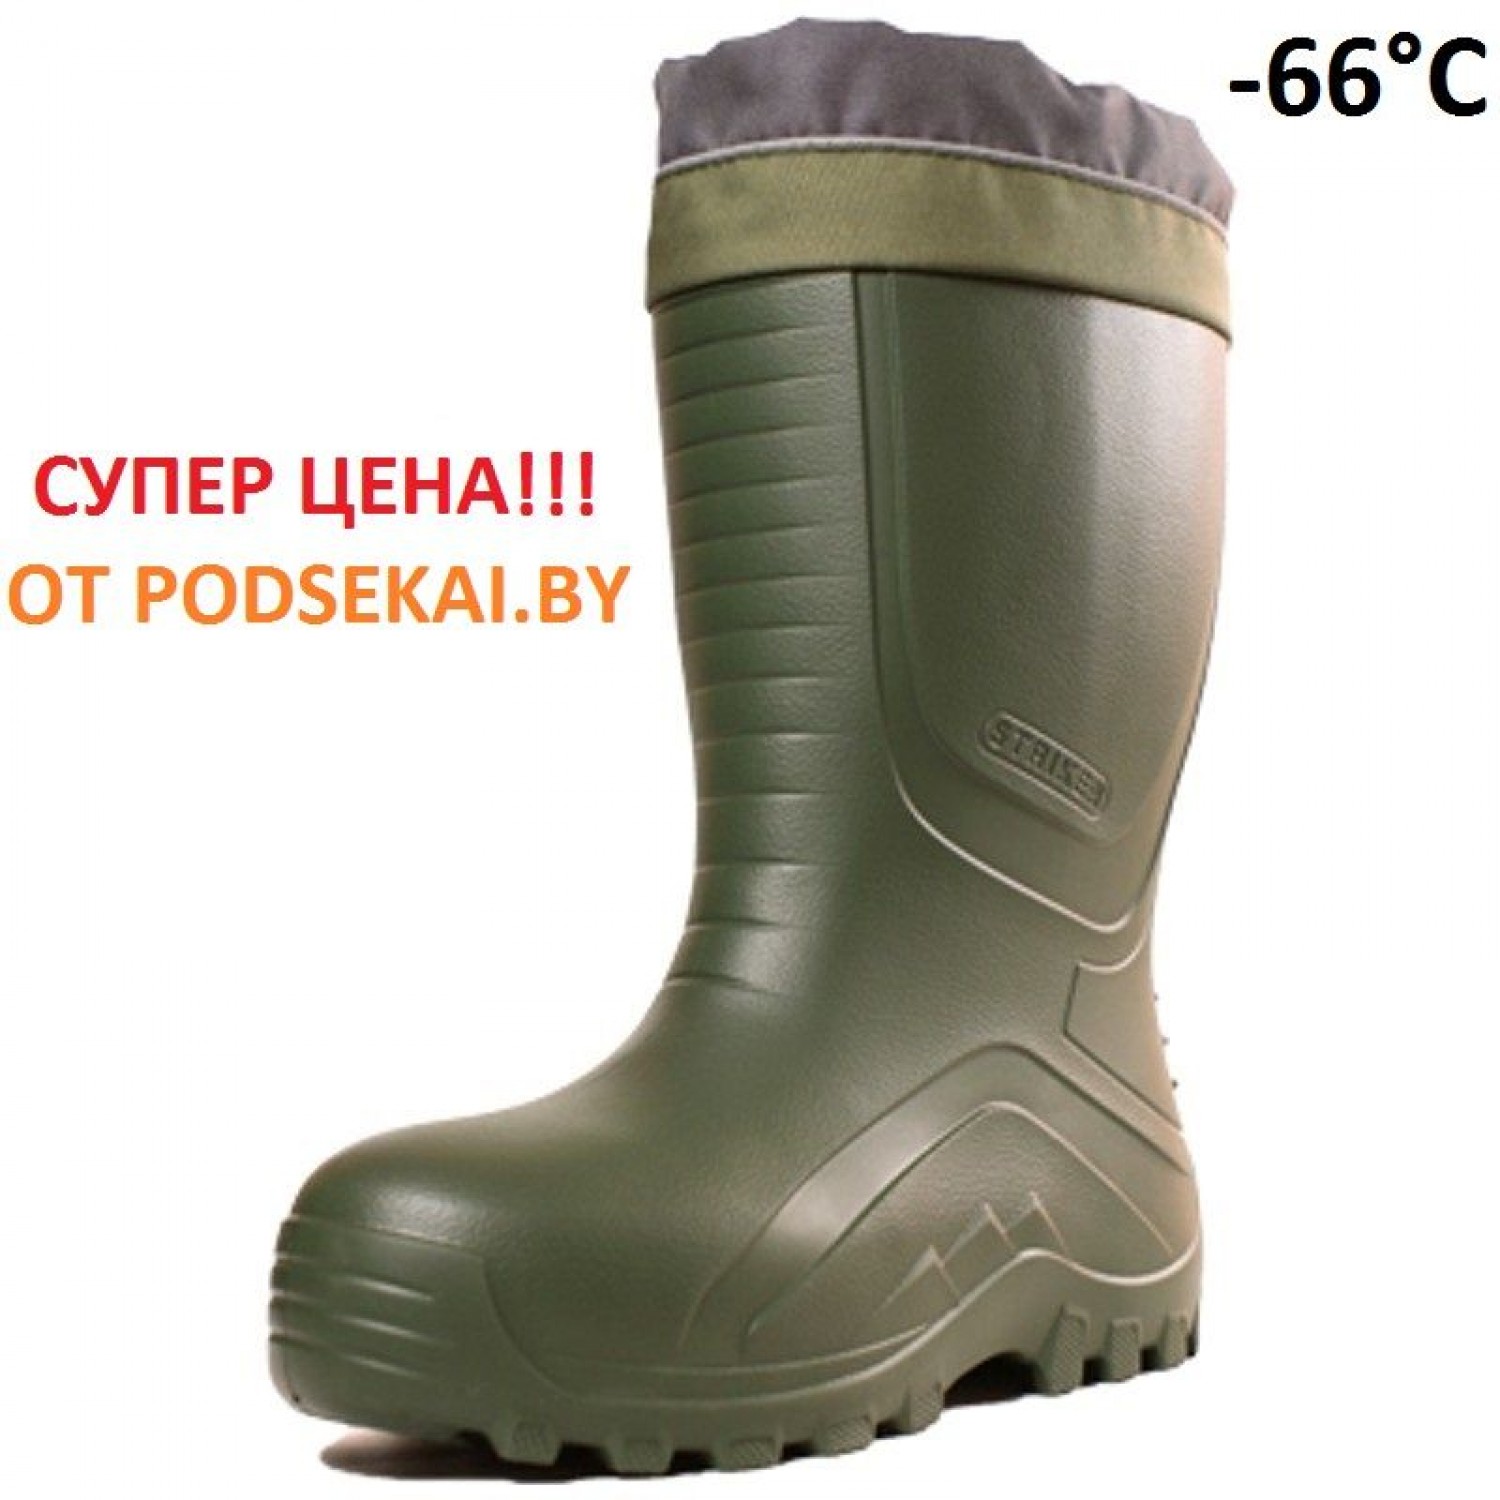 Покупка Сапоги зимние STRIKER ЭВА -66°C (Дюна-АСТ) в Минске Беларуси